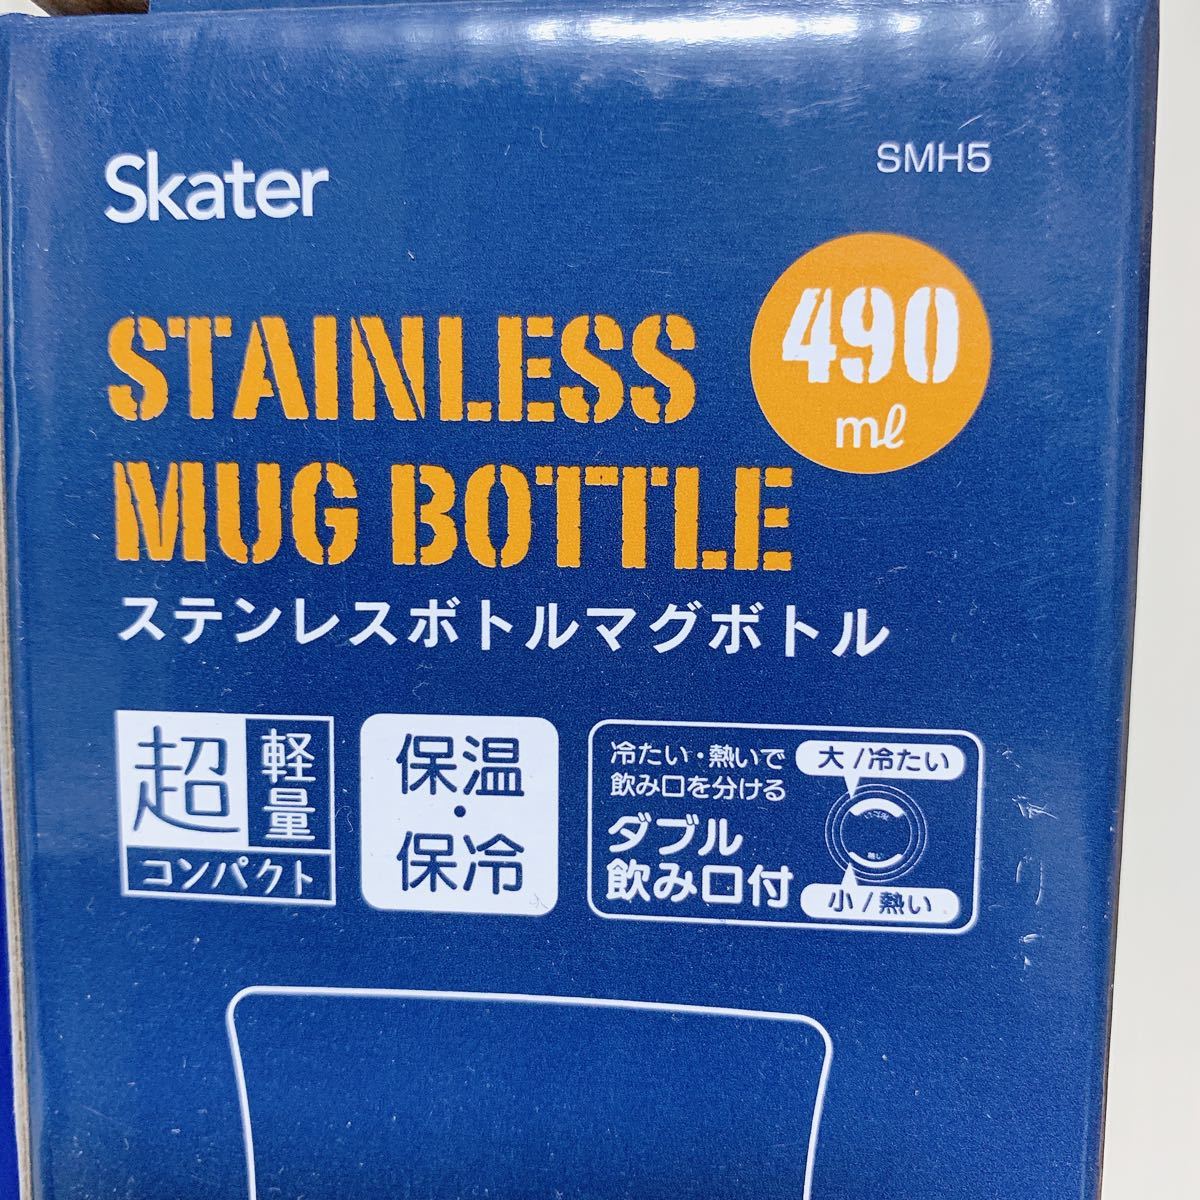 ミニオン&スヌーピー ☆490ml ステンレスマグボトル